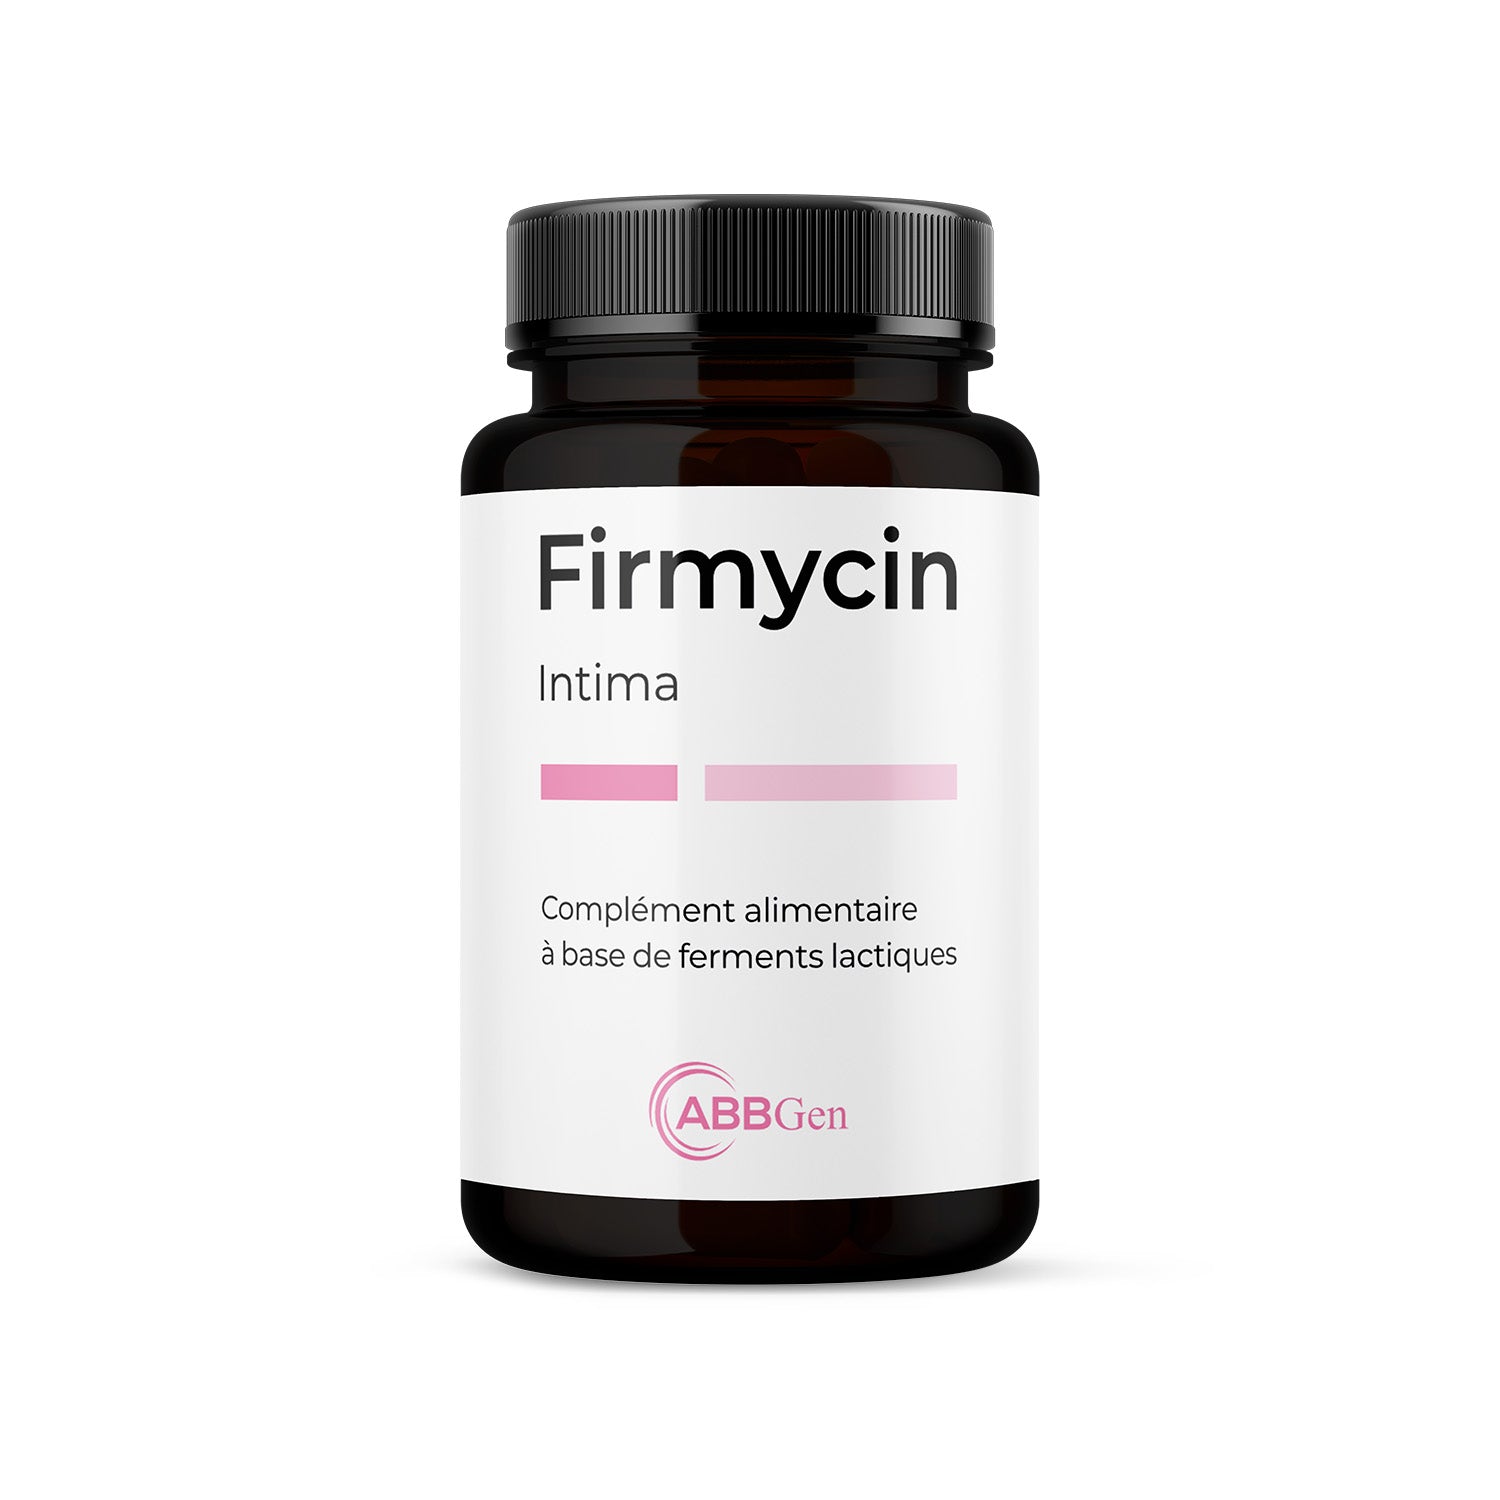 Firmycin complément alimentaire microbiote vaginal contre cystites